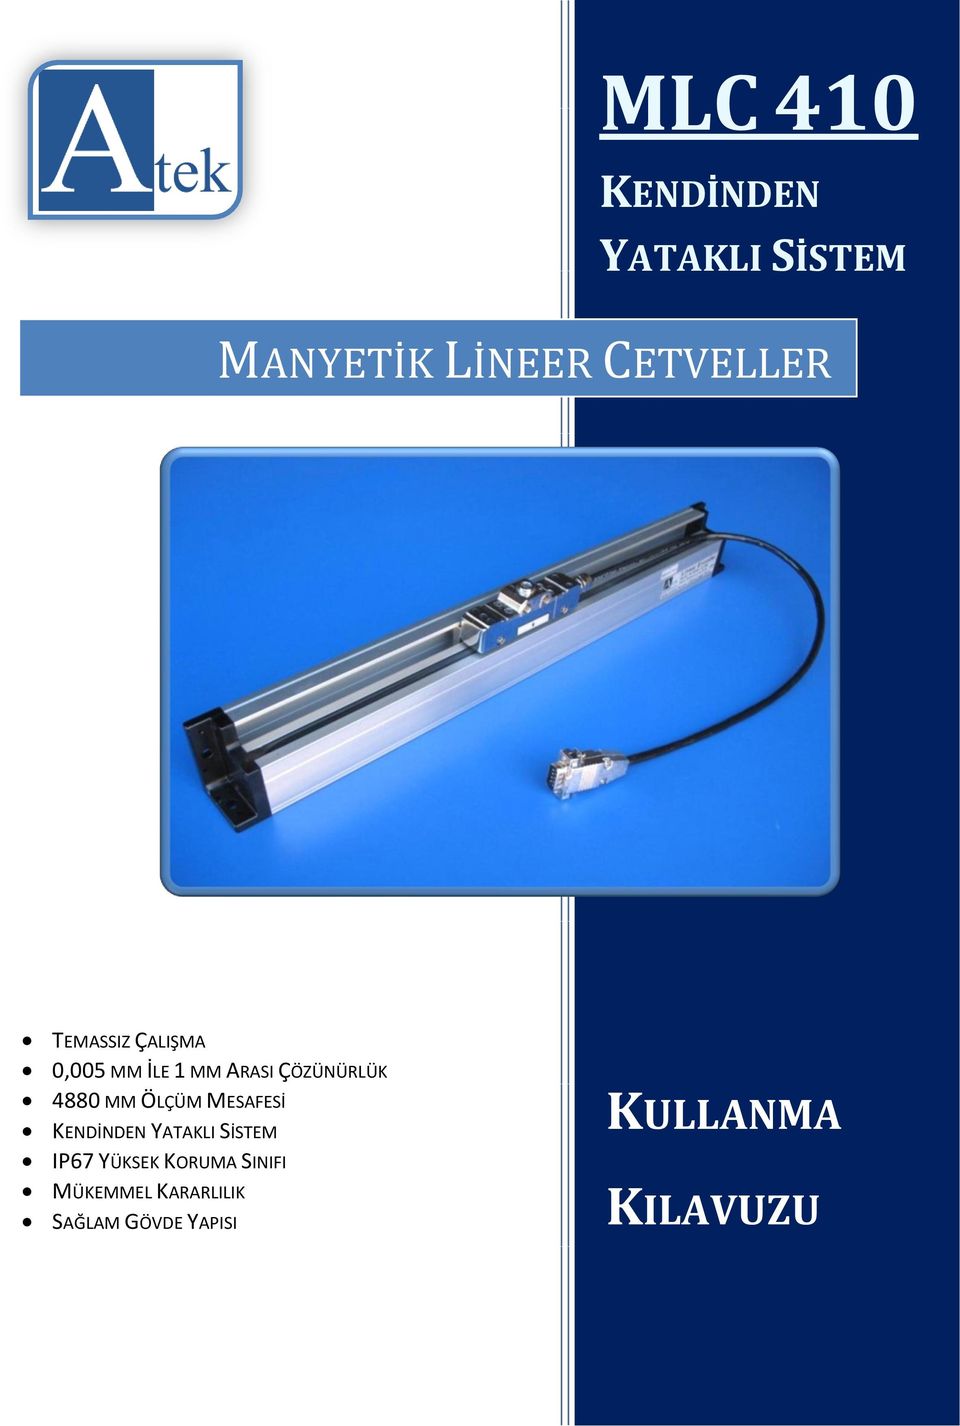 MLC 410 MANYETİK LİNEER CETVELLER KULLANMA KILAVUZU - PDF Free Download